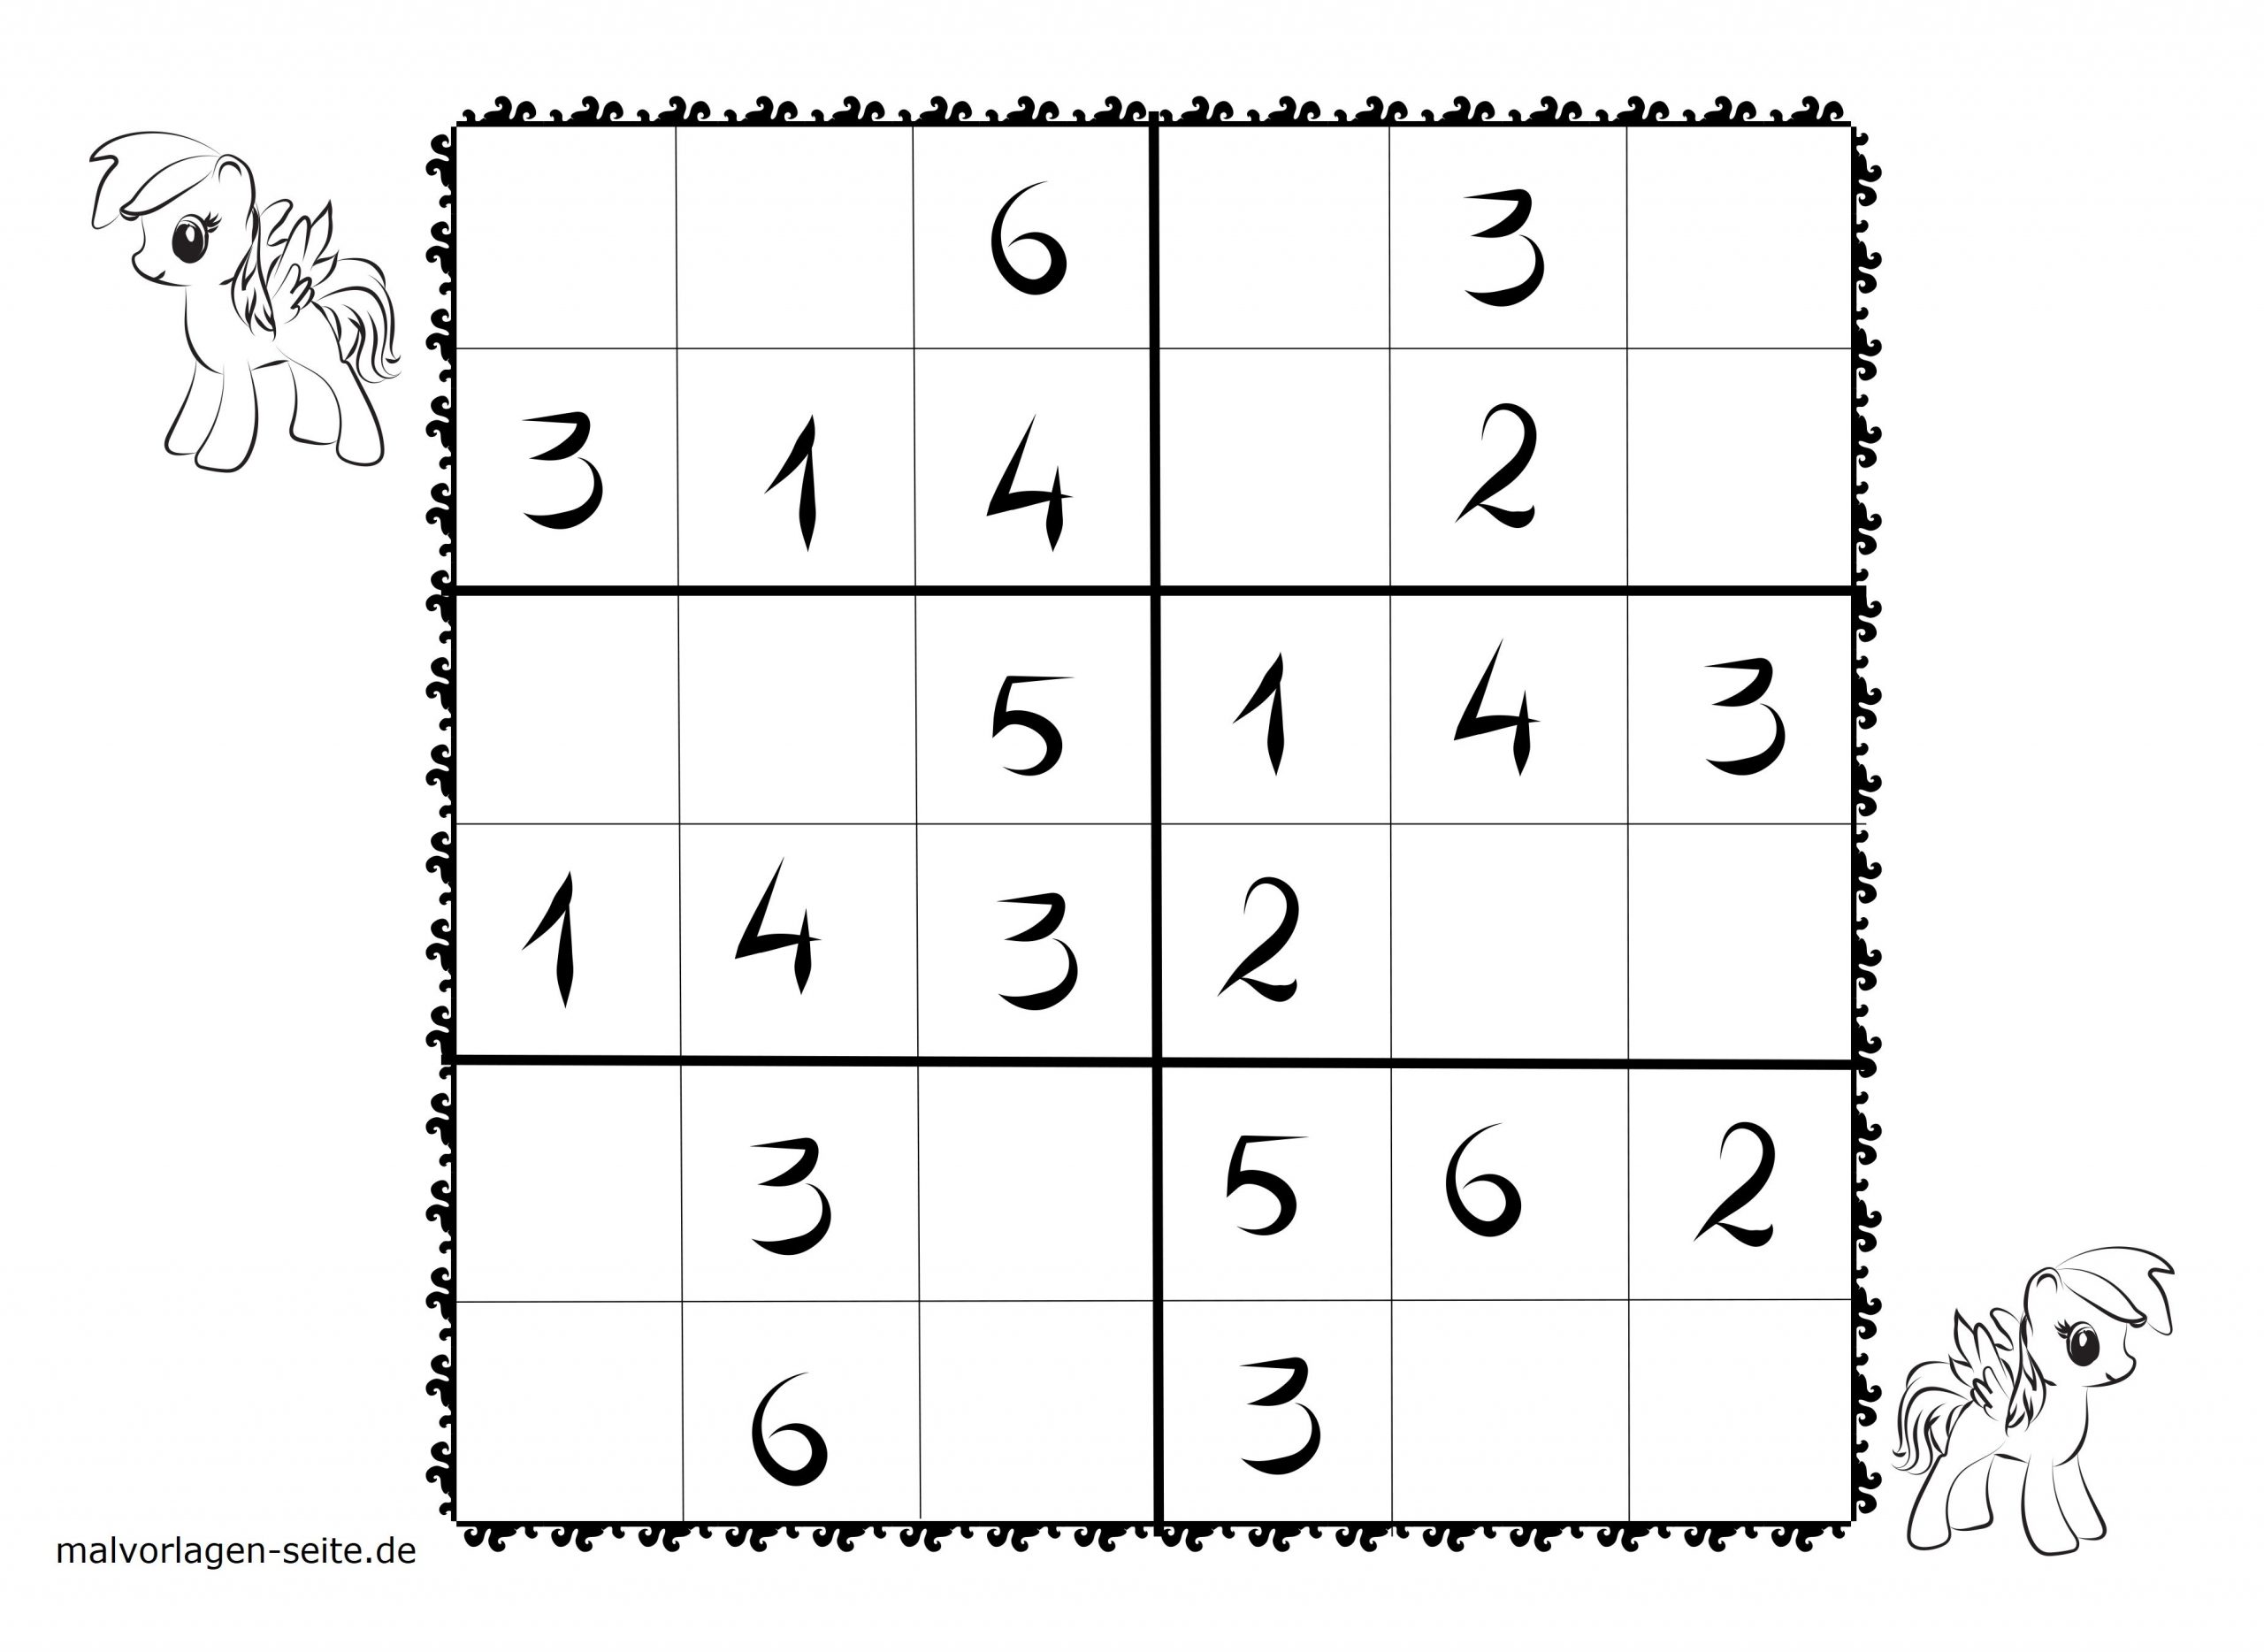 Malvorlagen Sudoku Kinder | Coloring And Malvorlagan bestimmt für Sudoku Zum Ausdrucken Mittel